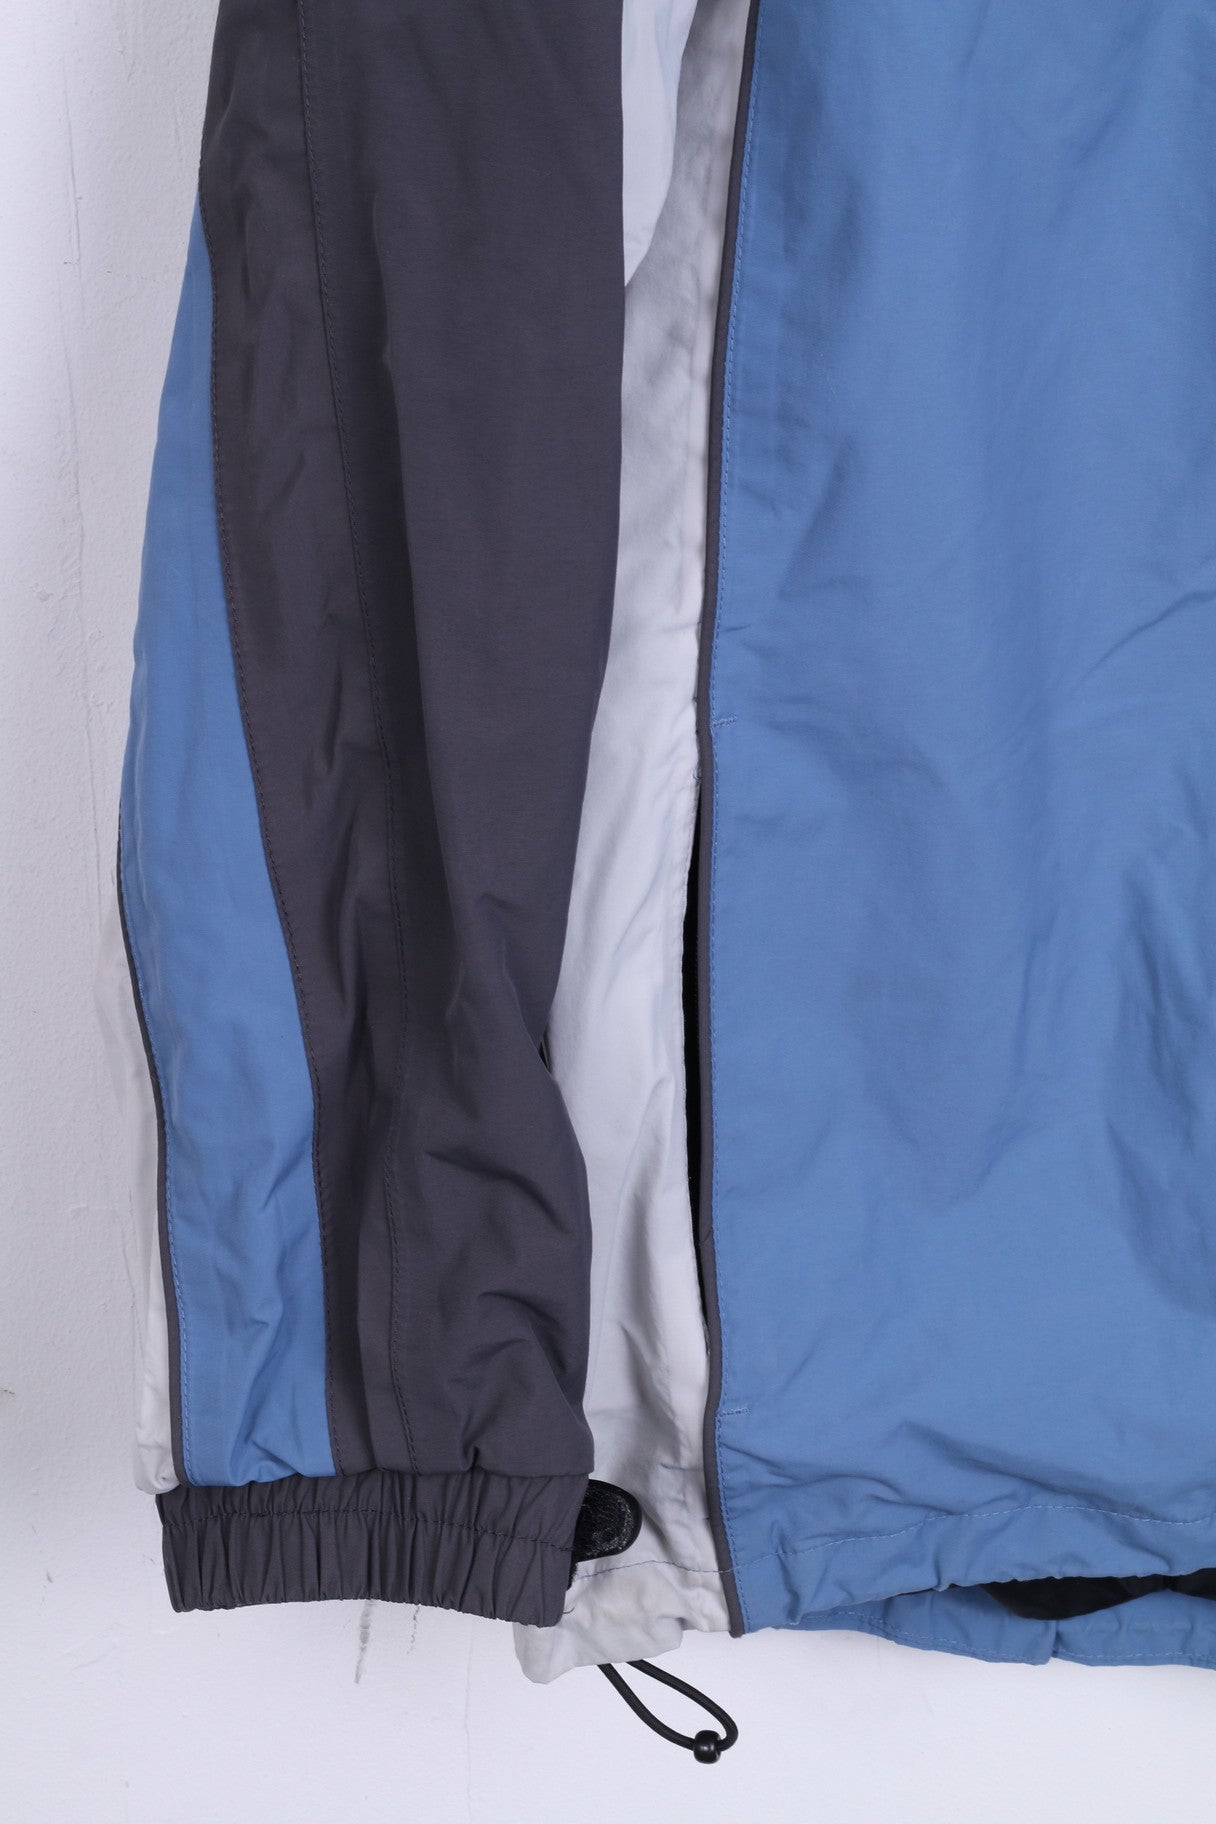 Giacca XL da donna HI-TEC Blu Inverno 5000 Alta tecnologia calda impermeabile